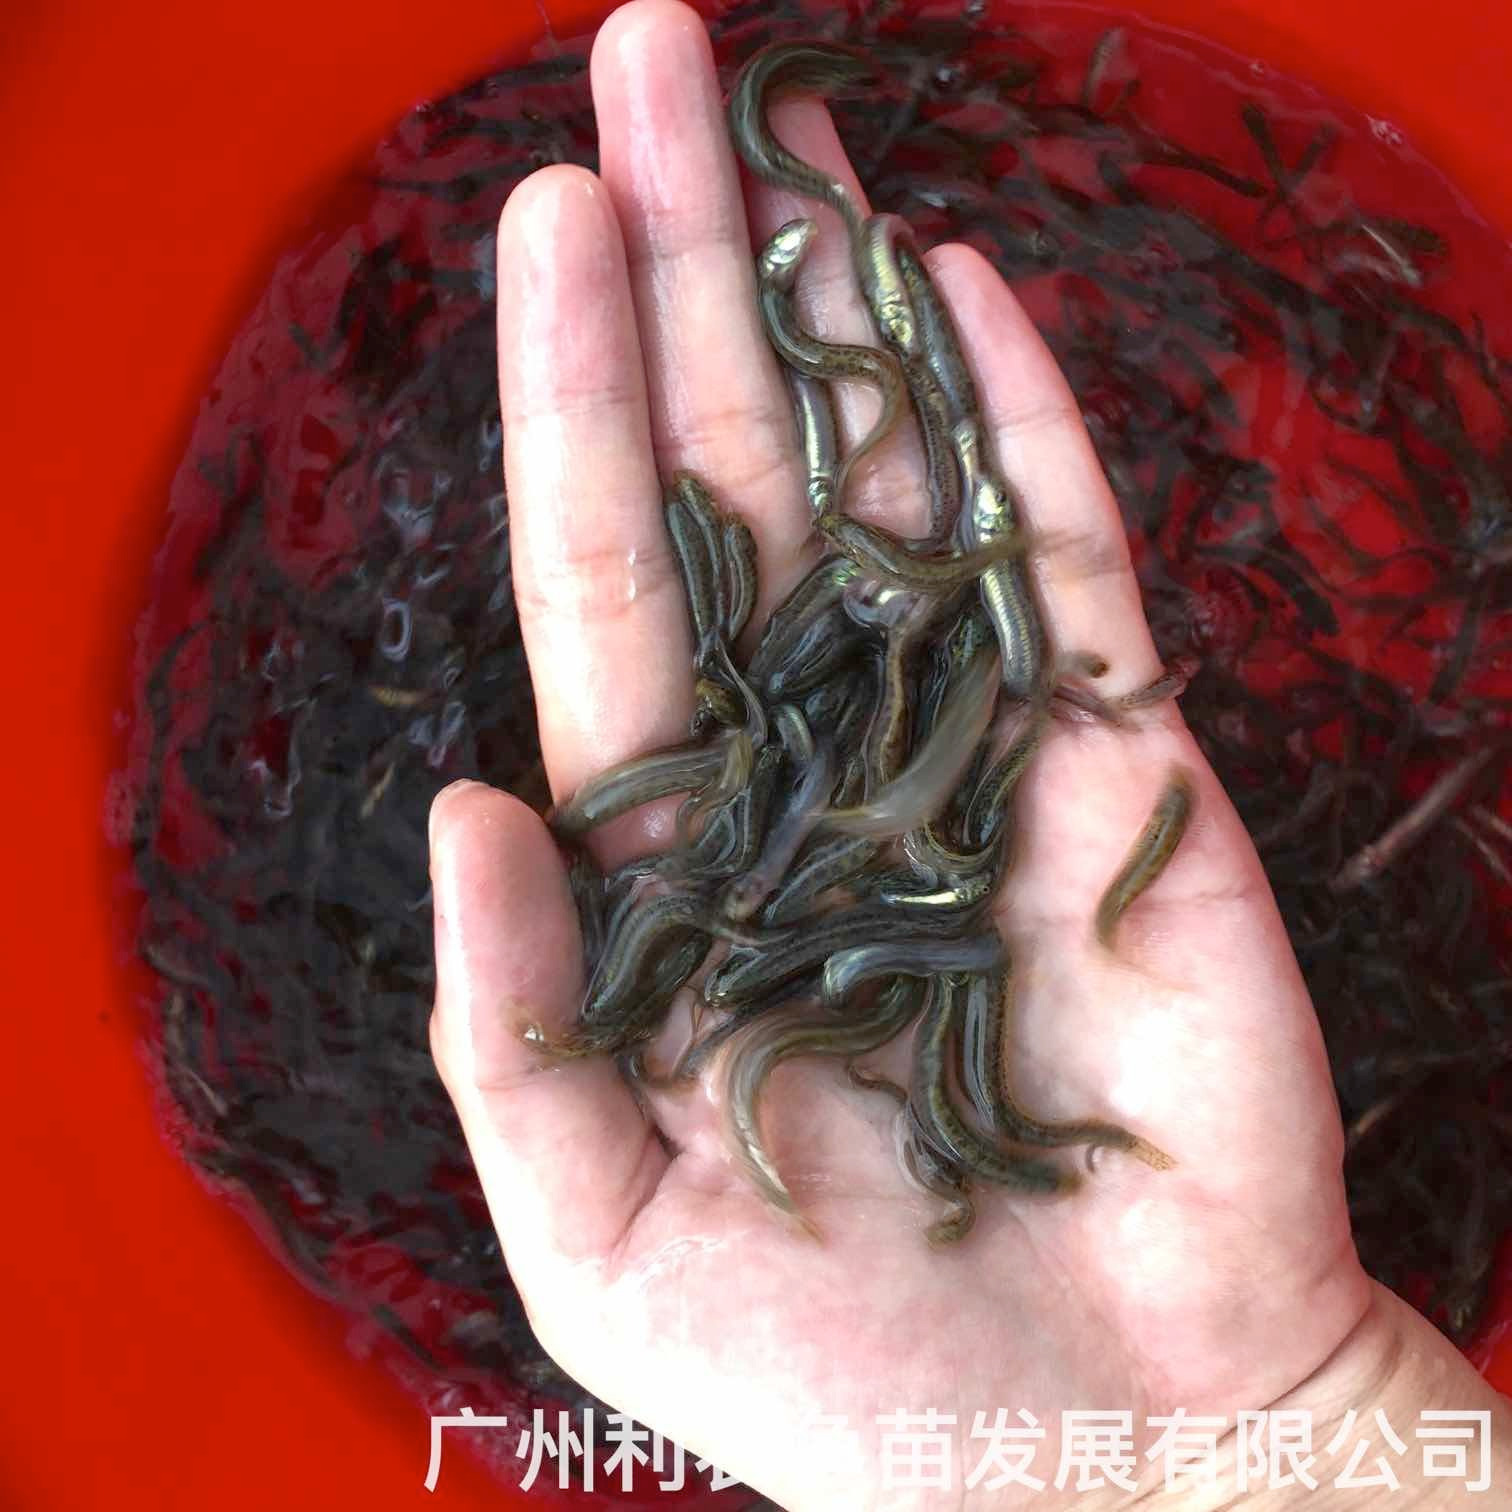 台湾泥鳅苗批发价格泥鳅鱼苗出售台湾泥鳅苗种苗大量供应图片